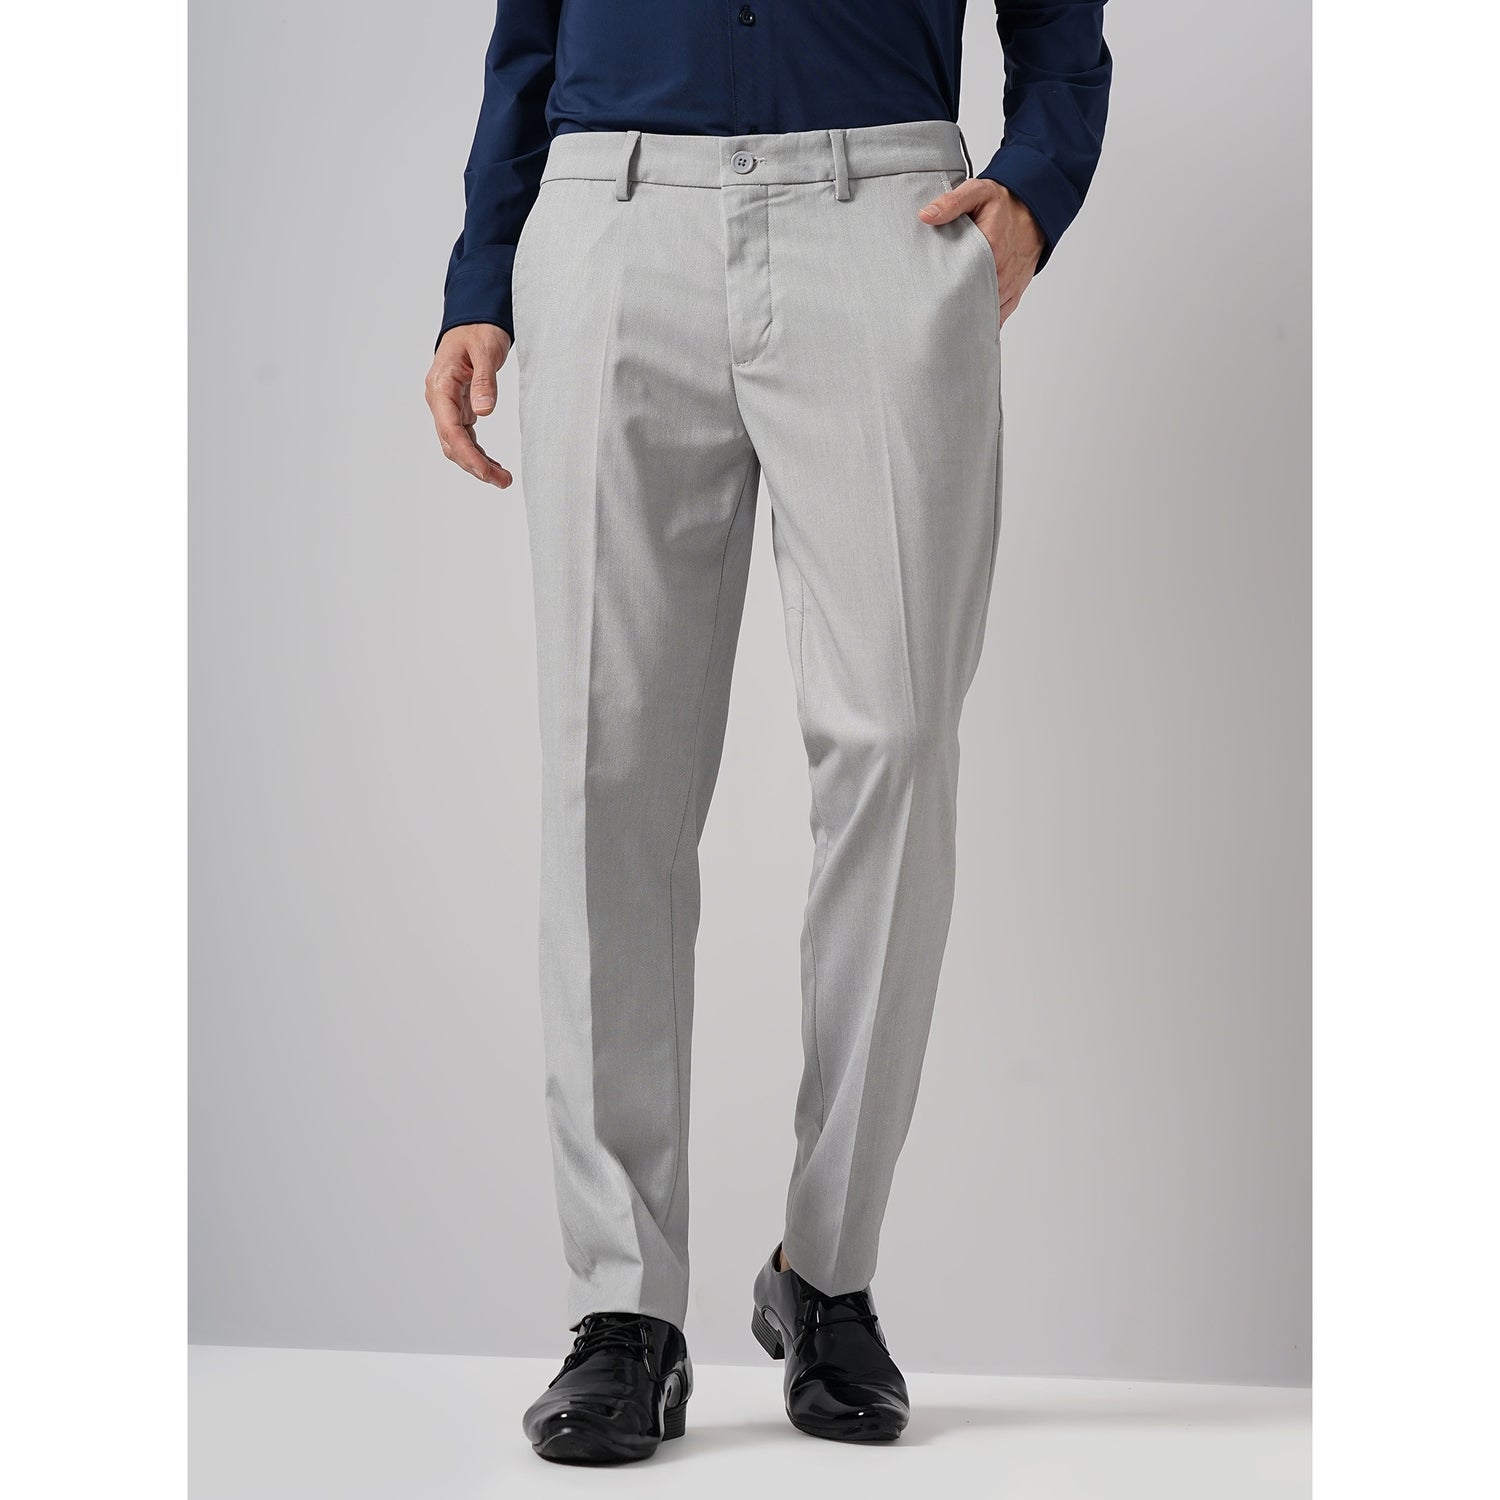 Men Grey Solid Slim Fit Polyester Formal Trouser (GOSMARTY)